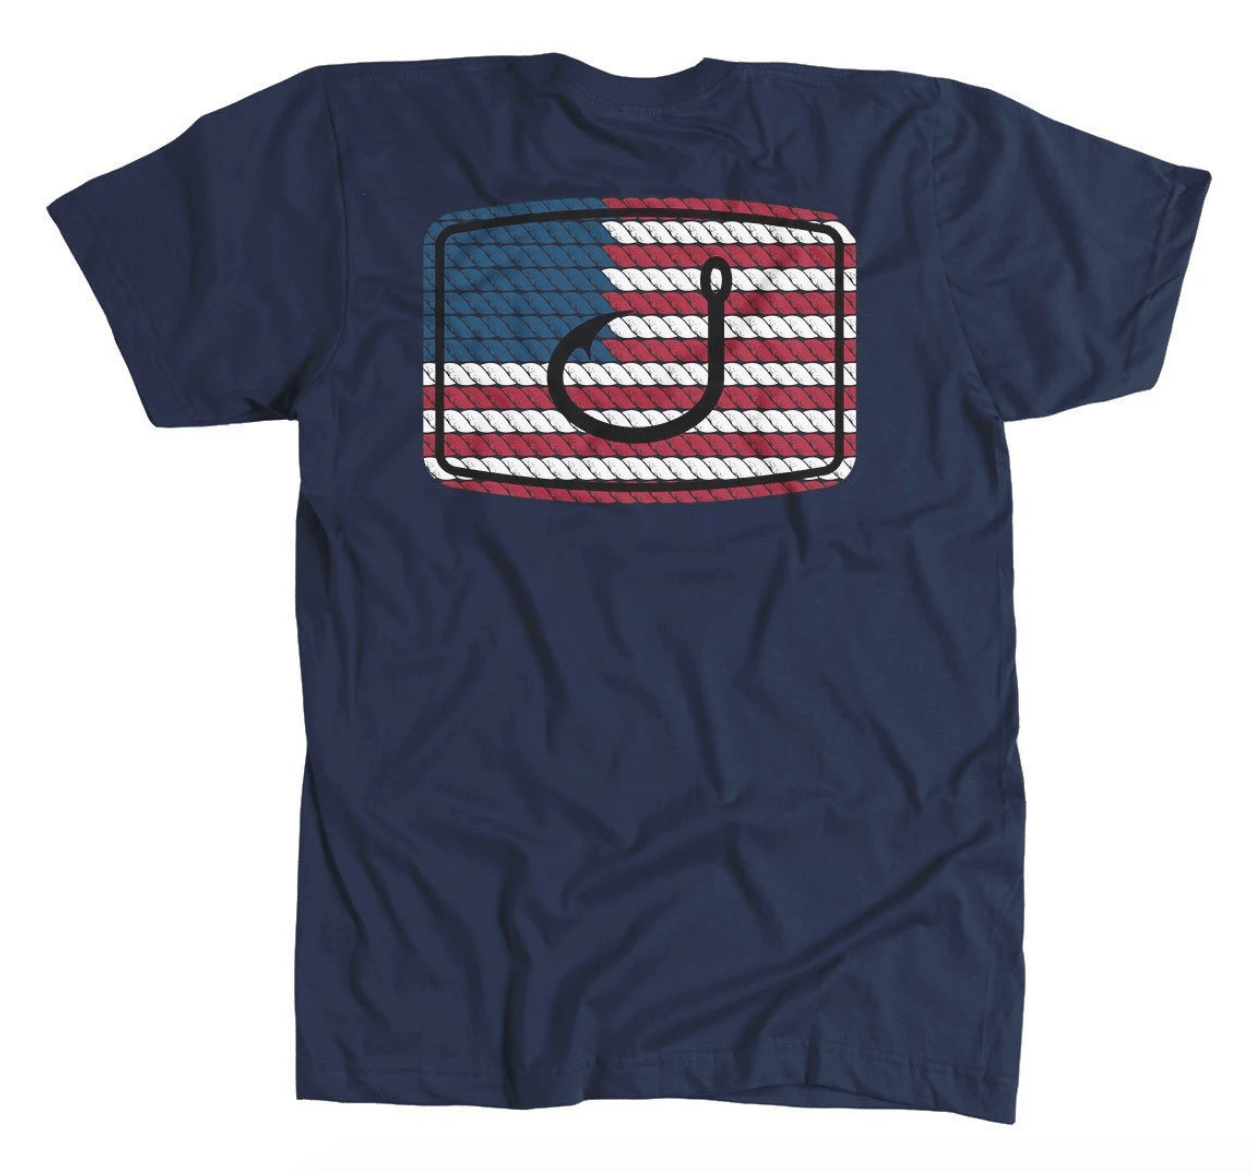 Avid Men's Tee Shirt Small Avid, Men's American Anthem Tee (Navy)